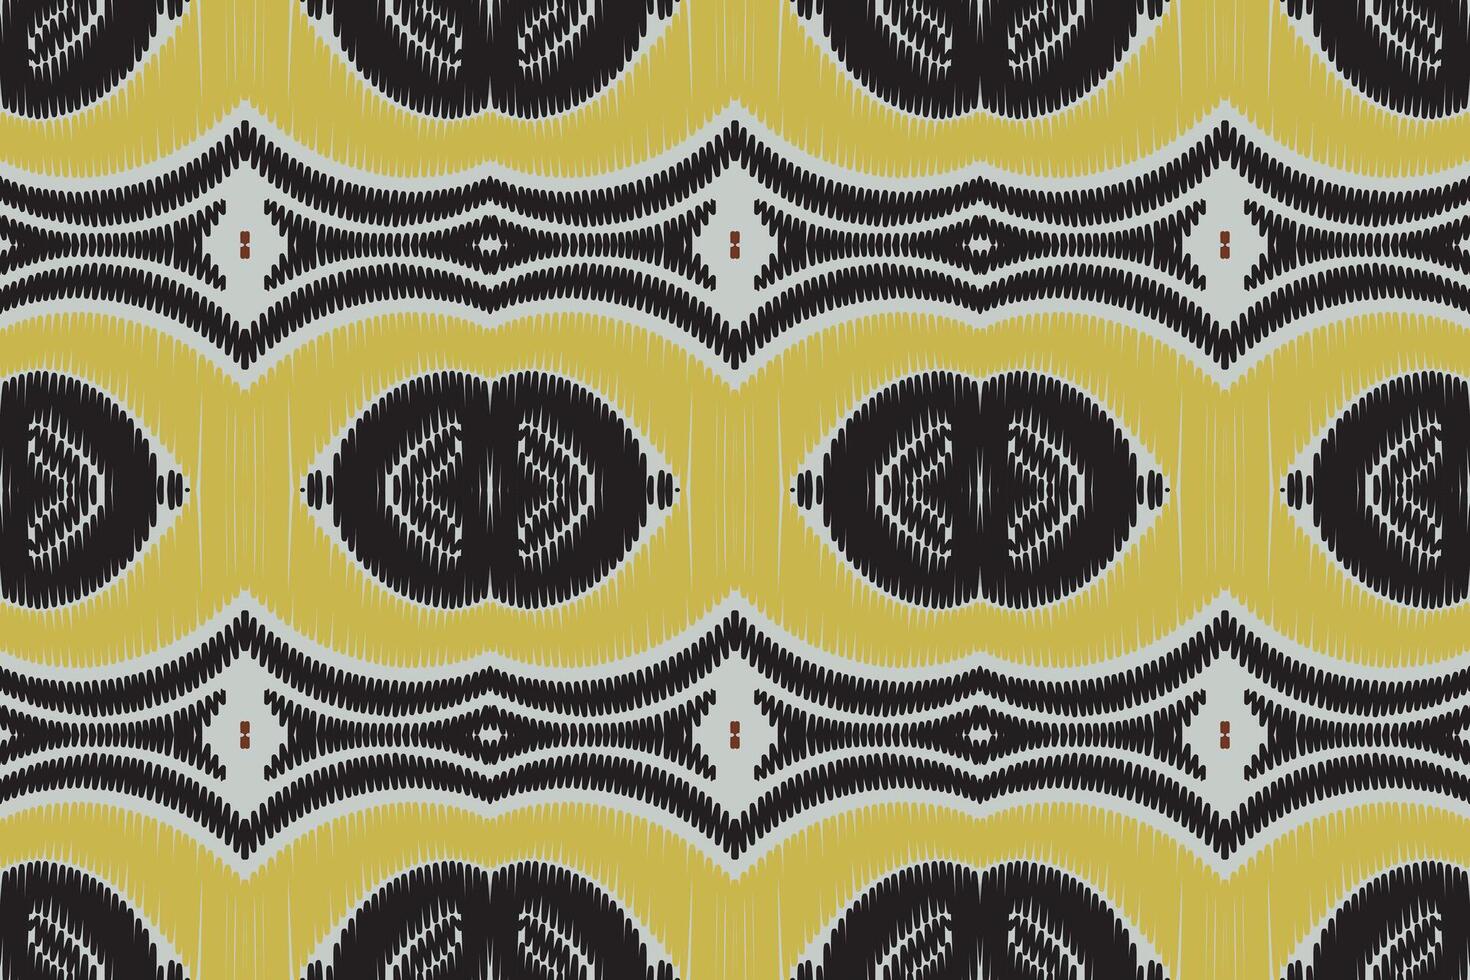 padrão sem emenda de ikat étnico em tribal. design para plano de fundo, papel de parede, ilustração vetorial, tecido, vestuário, tapete, têxtil, batik, bordado. vetor